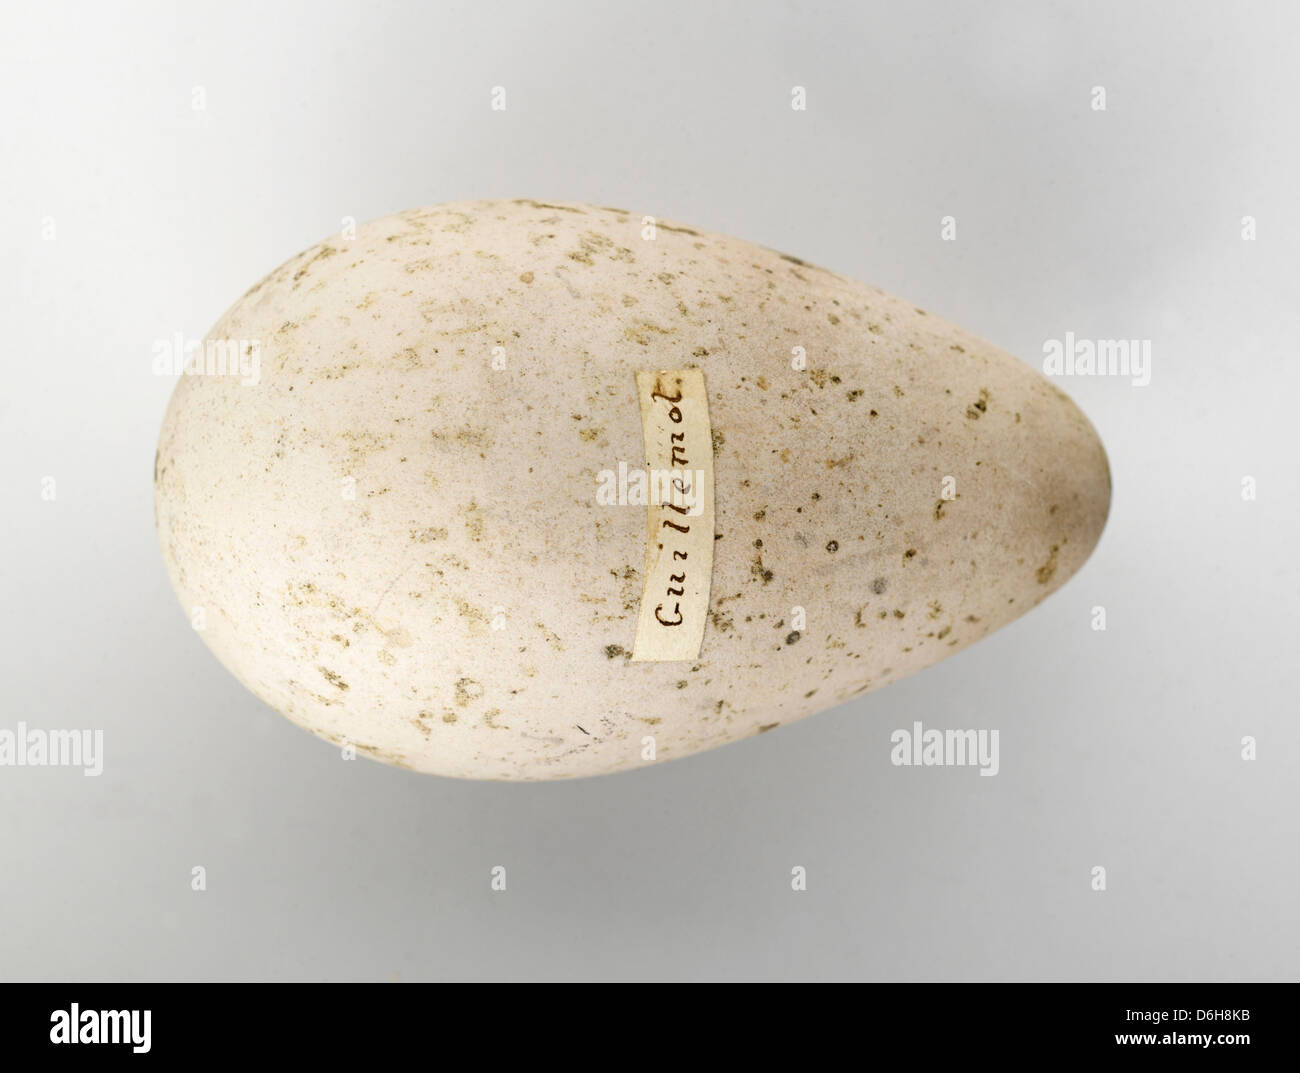 Old egg labeled 'Guillemot' Stock Photo